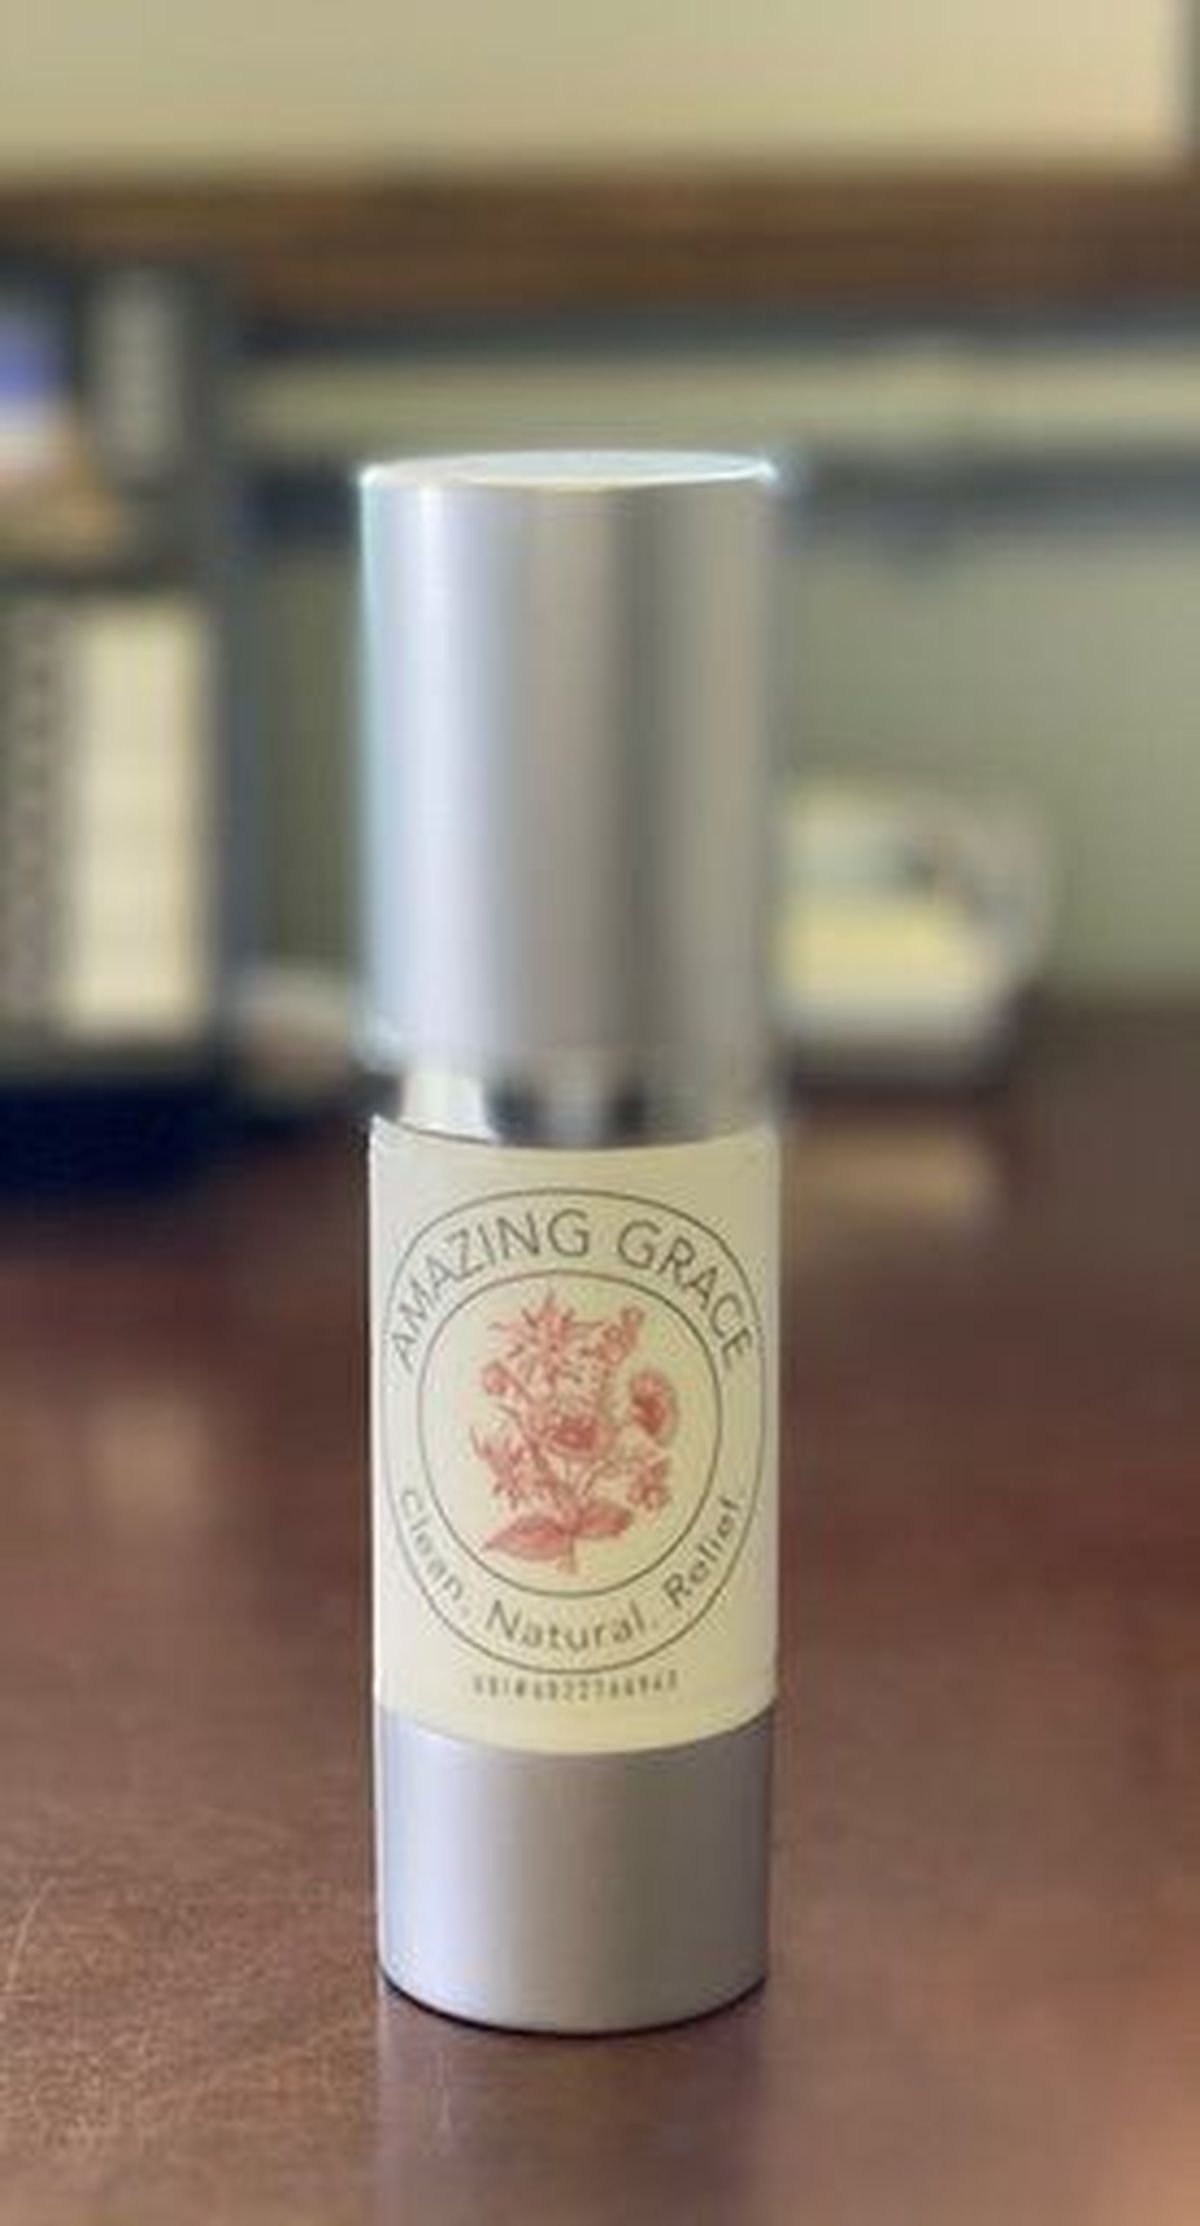 Buddy Boy Farm has introduced a CBD lotion line using a high-CBD strain of cannabis called Amazing Grace.  (Courtesy Buddy Boy Farm)